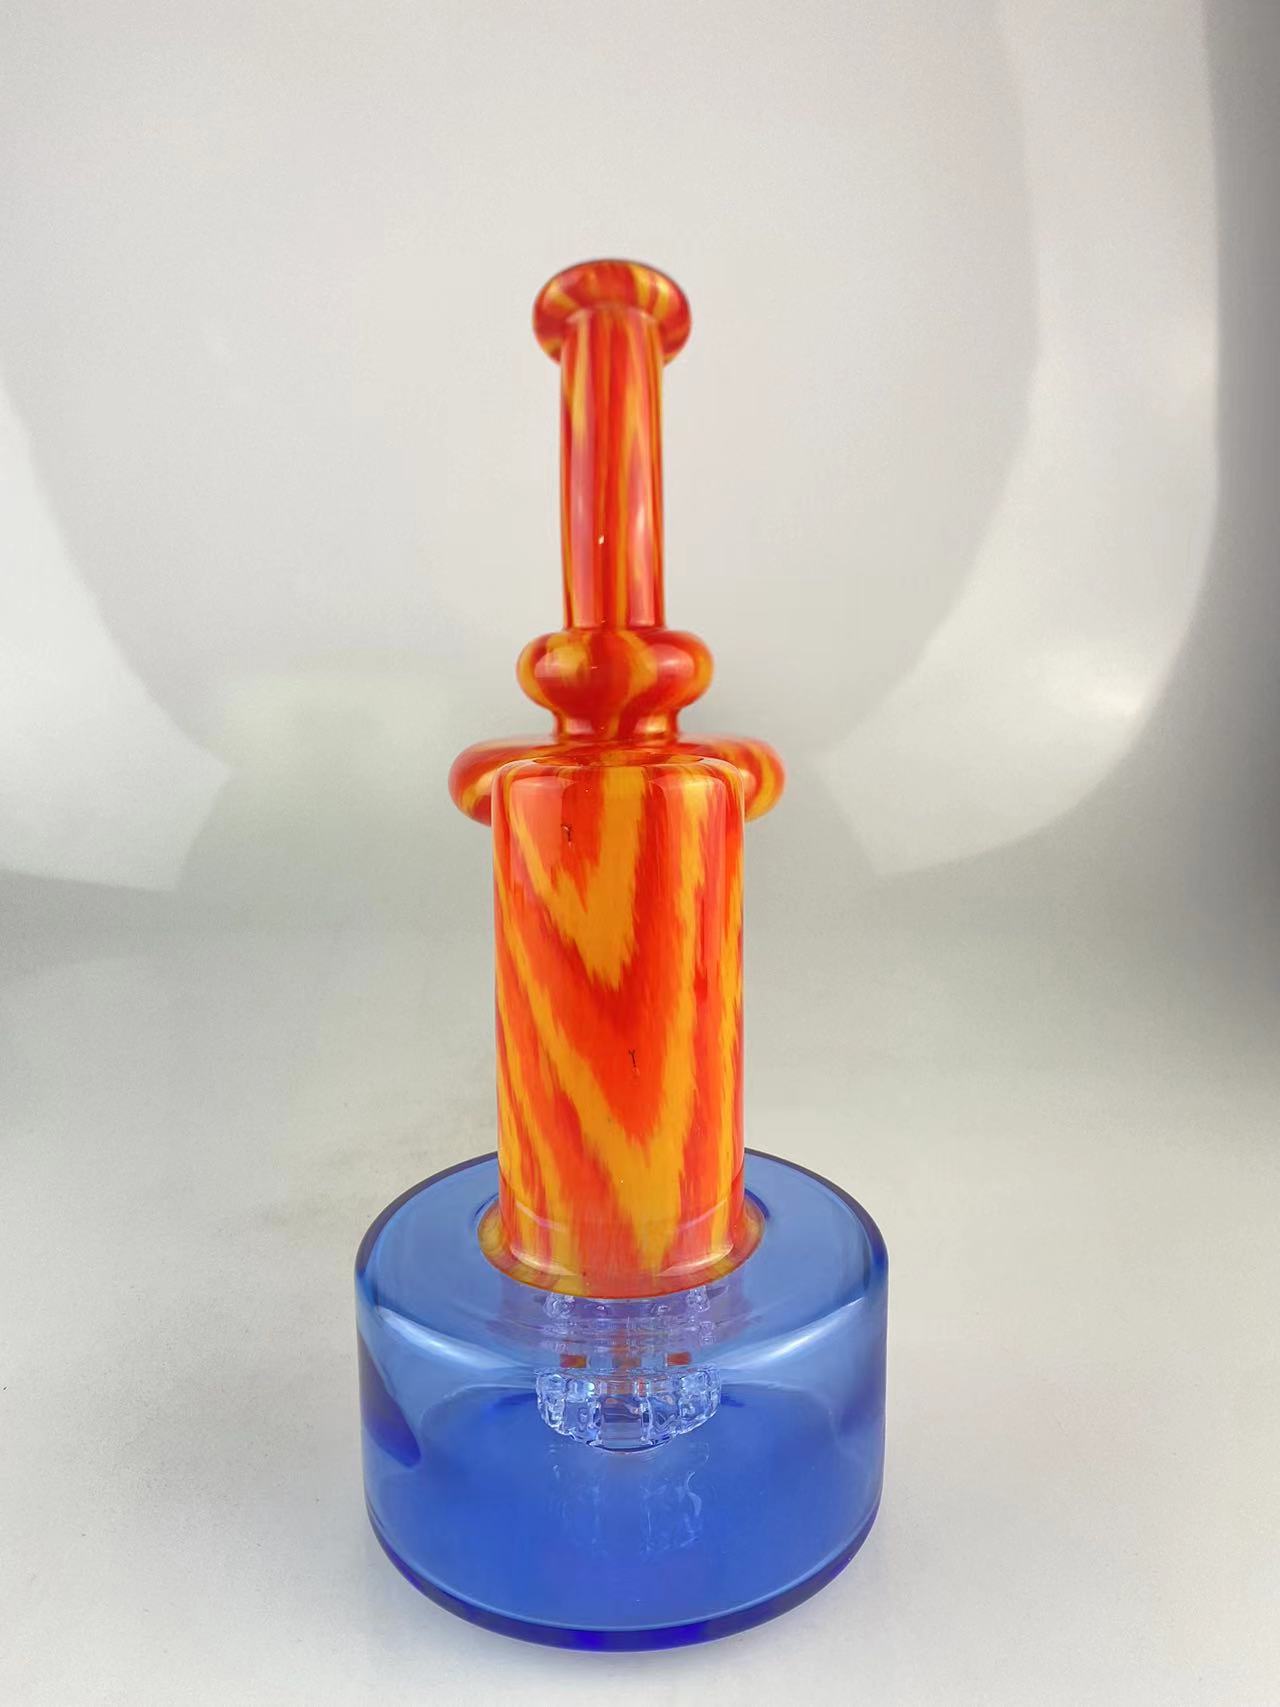 Pipe fumatori RBR colorate con arancione fuoco e fiori di cobalto, giunto da 14 mm dal design accattivante, gradite su ordinazione